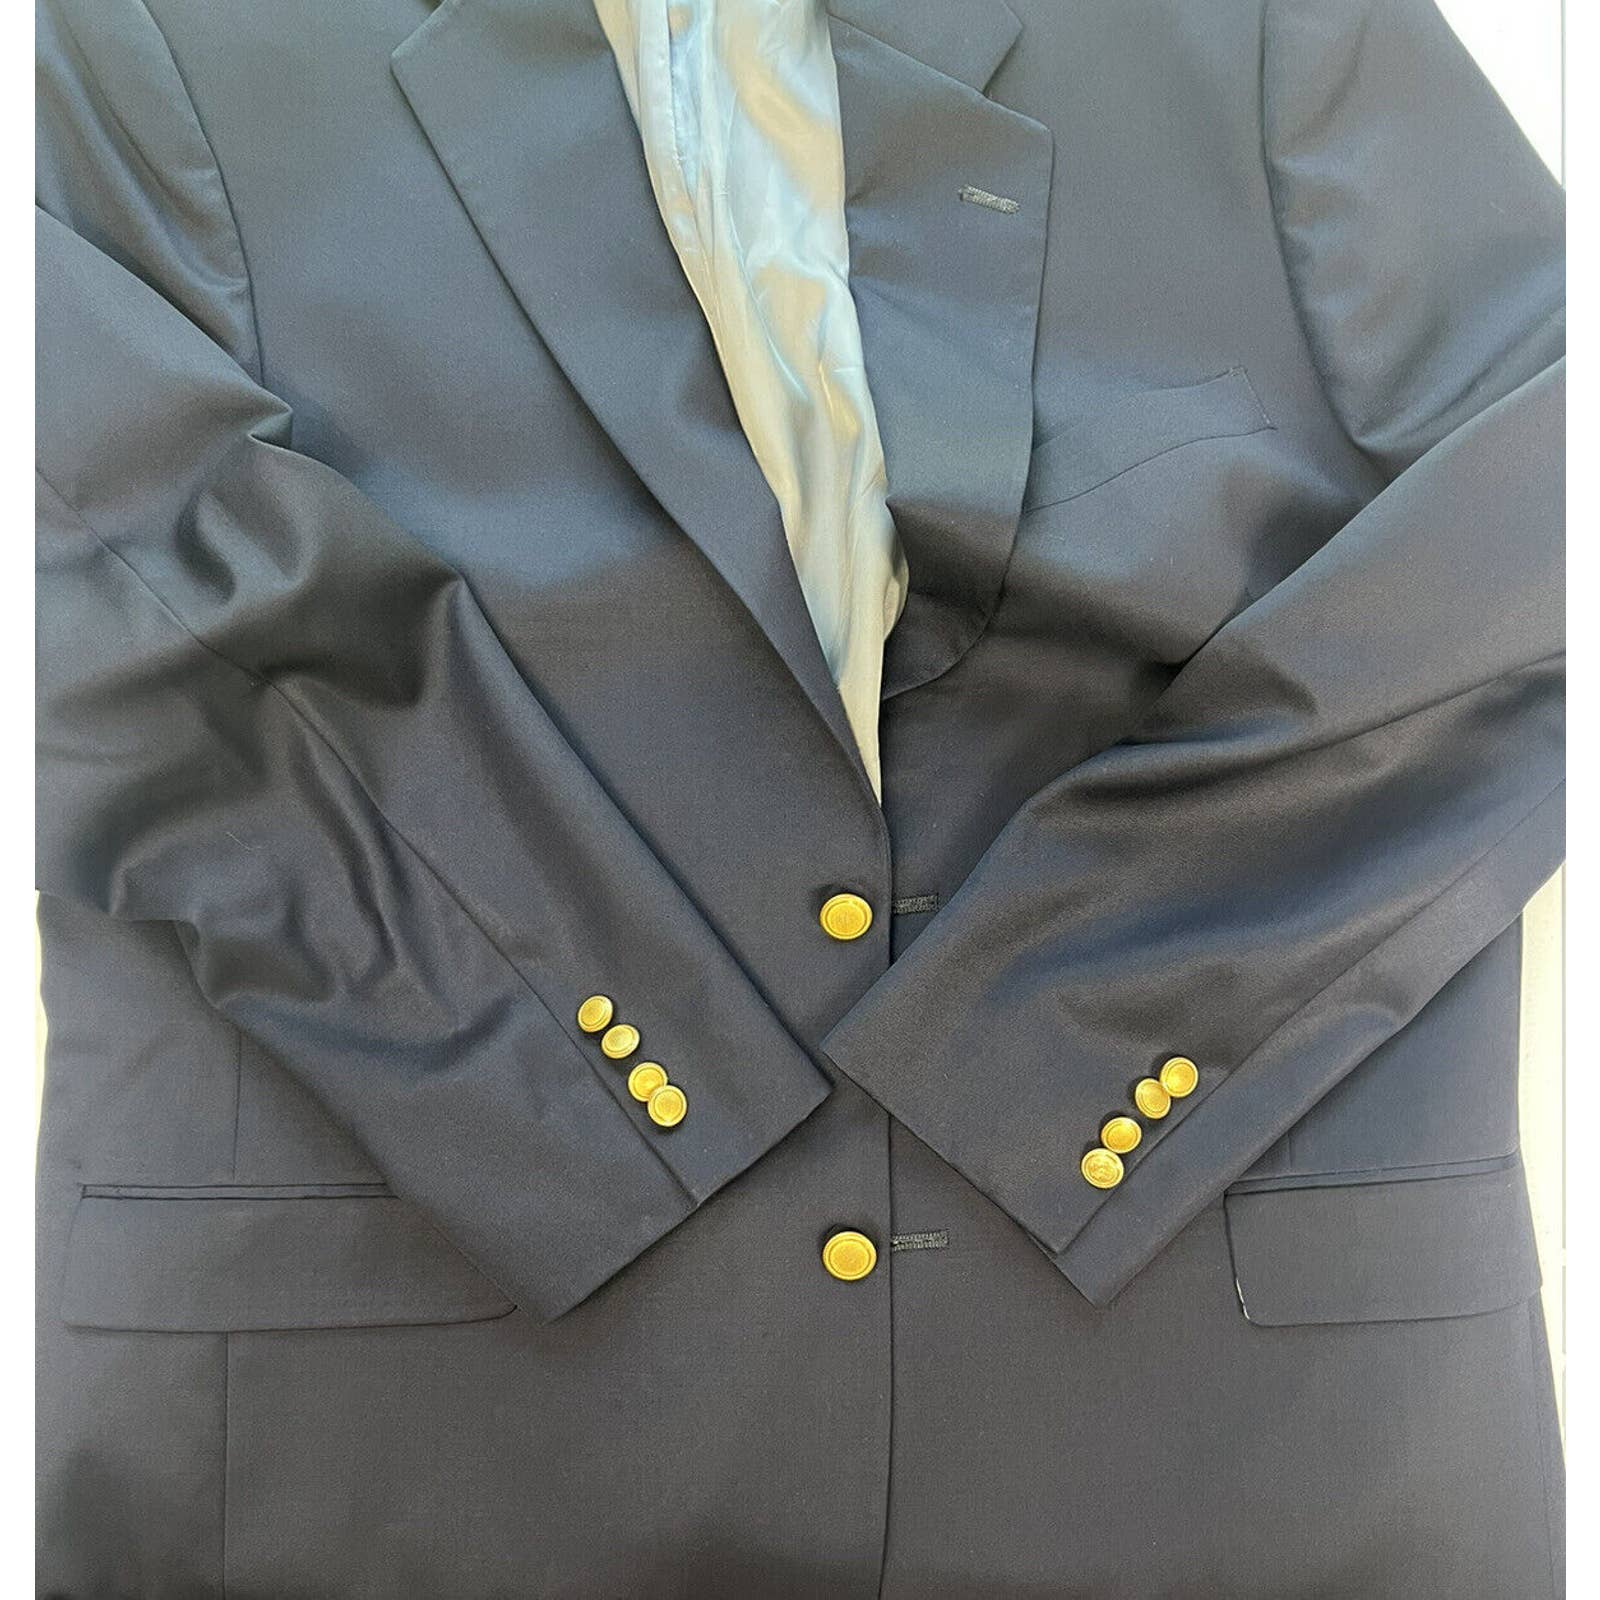 Hart Schaffner Marx 2 Button Blazer Mens 44L Sport Coat Jacket Navy Gold Buttons